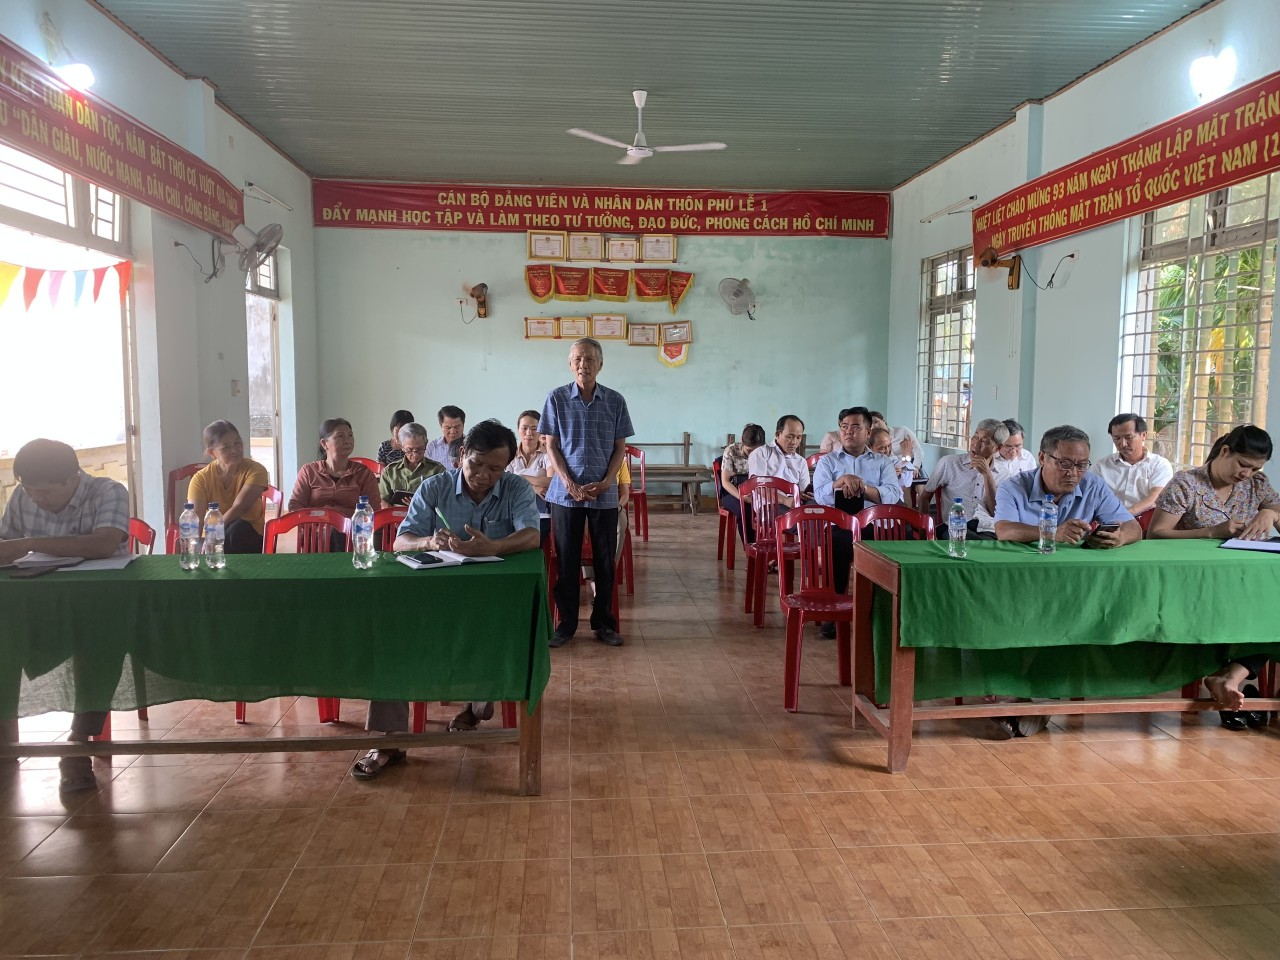 Nhân dân thôn Phú Lễ 2 tham gia ý kiến